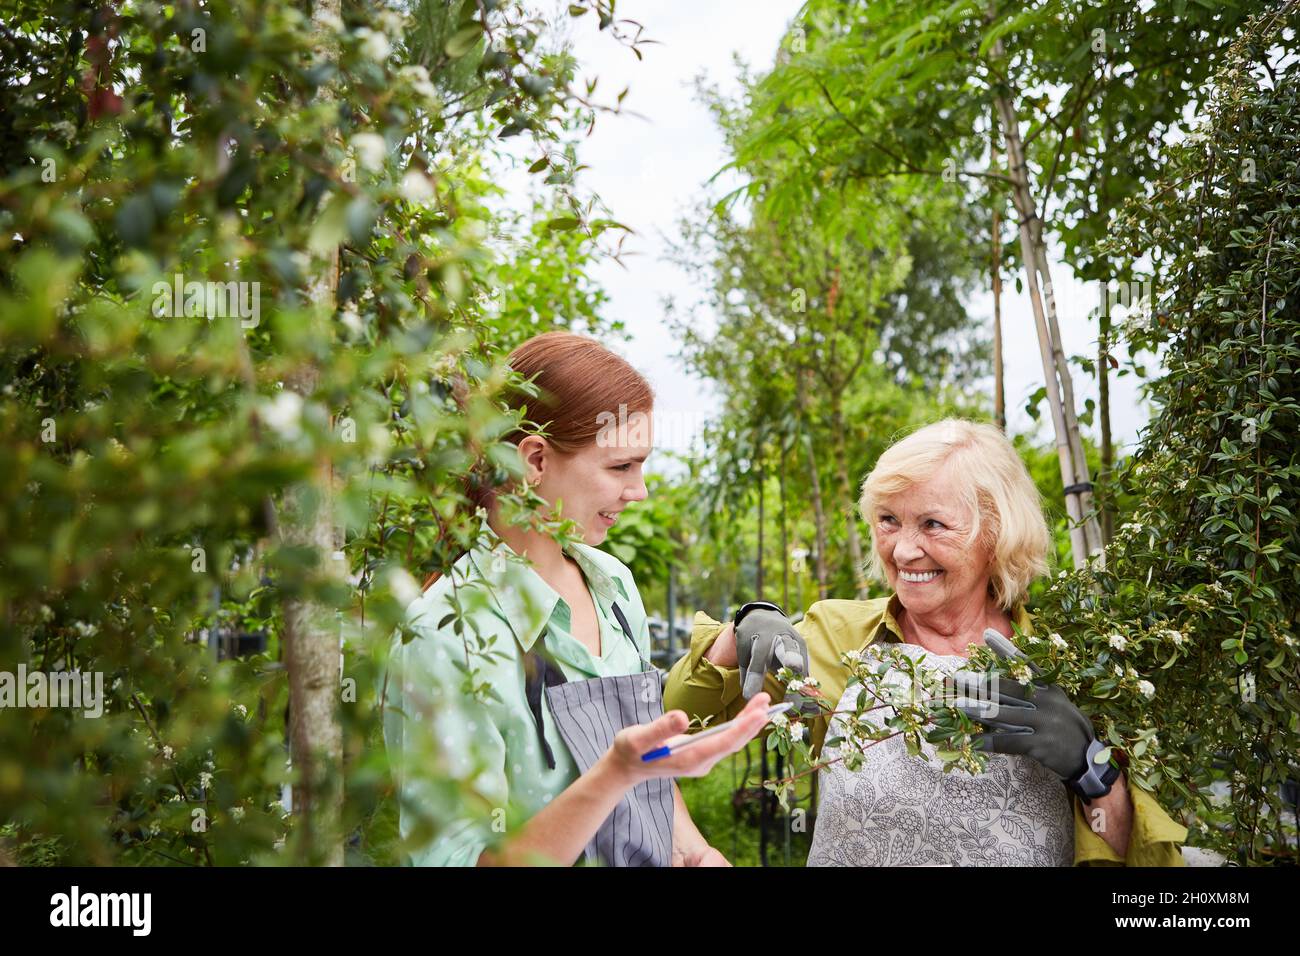 Giovane donna come tirocinante giardiniere e collega anziano che si prende cura degli alberi nella stanza dei bambini Foto Stock